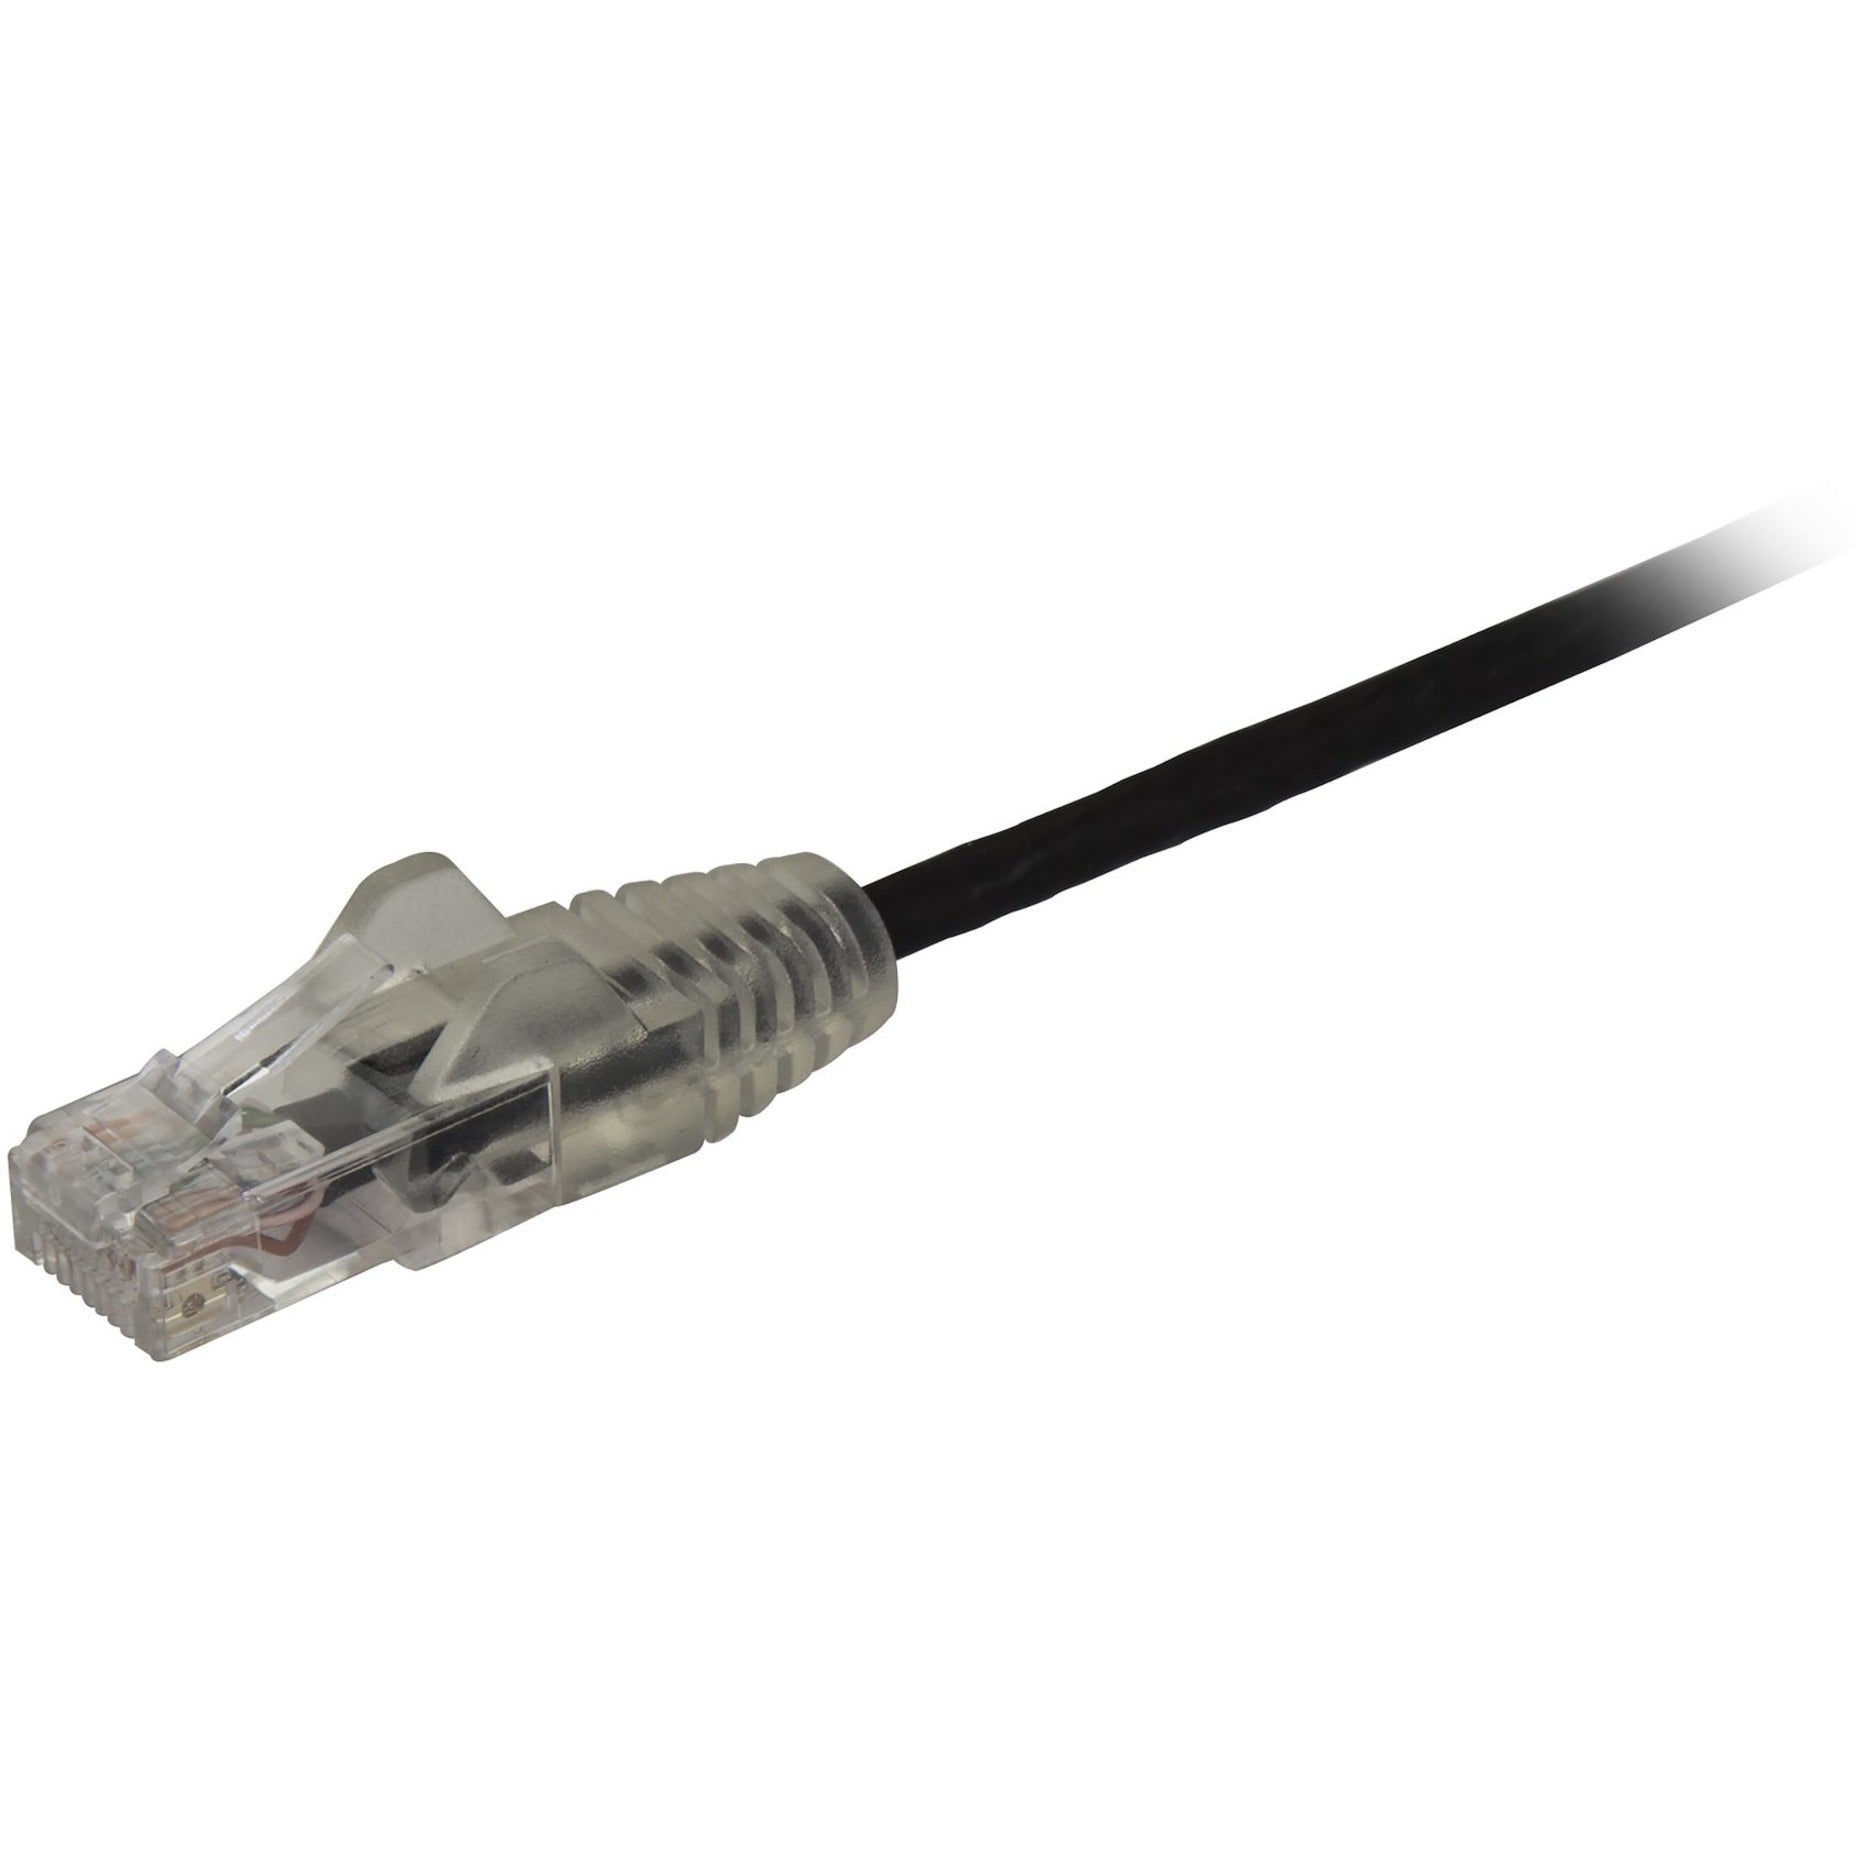 StarTech.com N6PAT3BKS Cable de red de parche Cat.6 3 pies Cable Ethernet Negro - Conectores RJ45 delgados y sin enganches Cable Cat6 Cable de parche Cat6 Cable de red Cat6